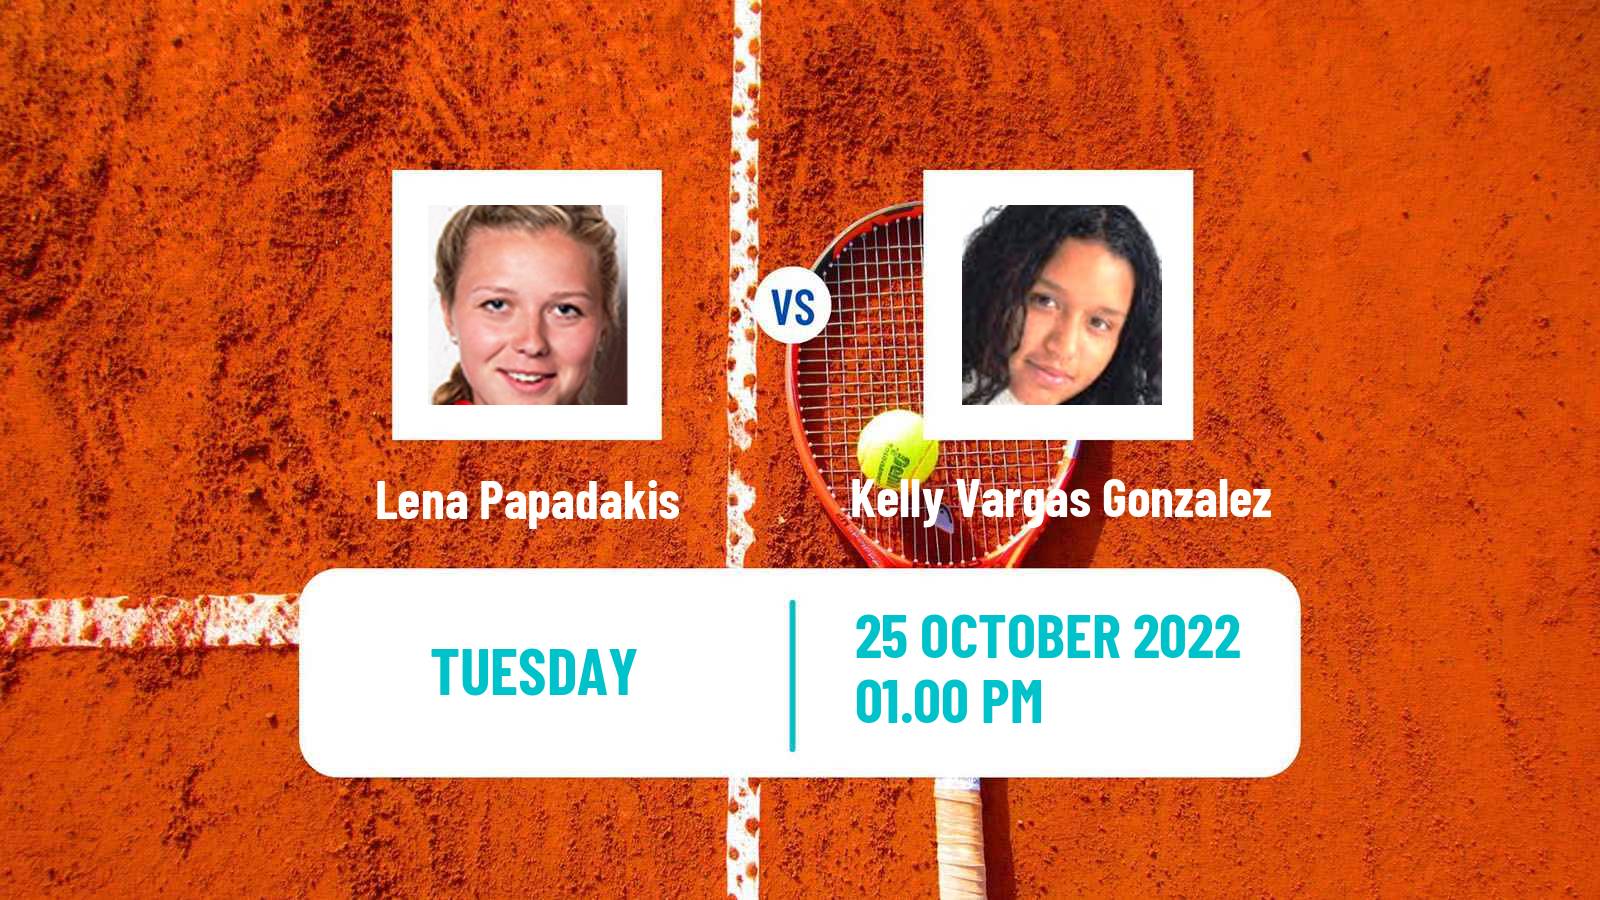 Tennis ITF Tournaments Lena Papadakis - Kelly Vargas Gonzalez